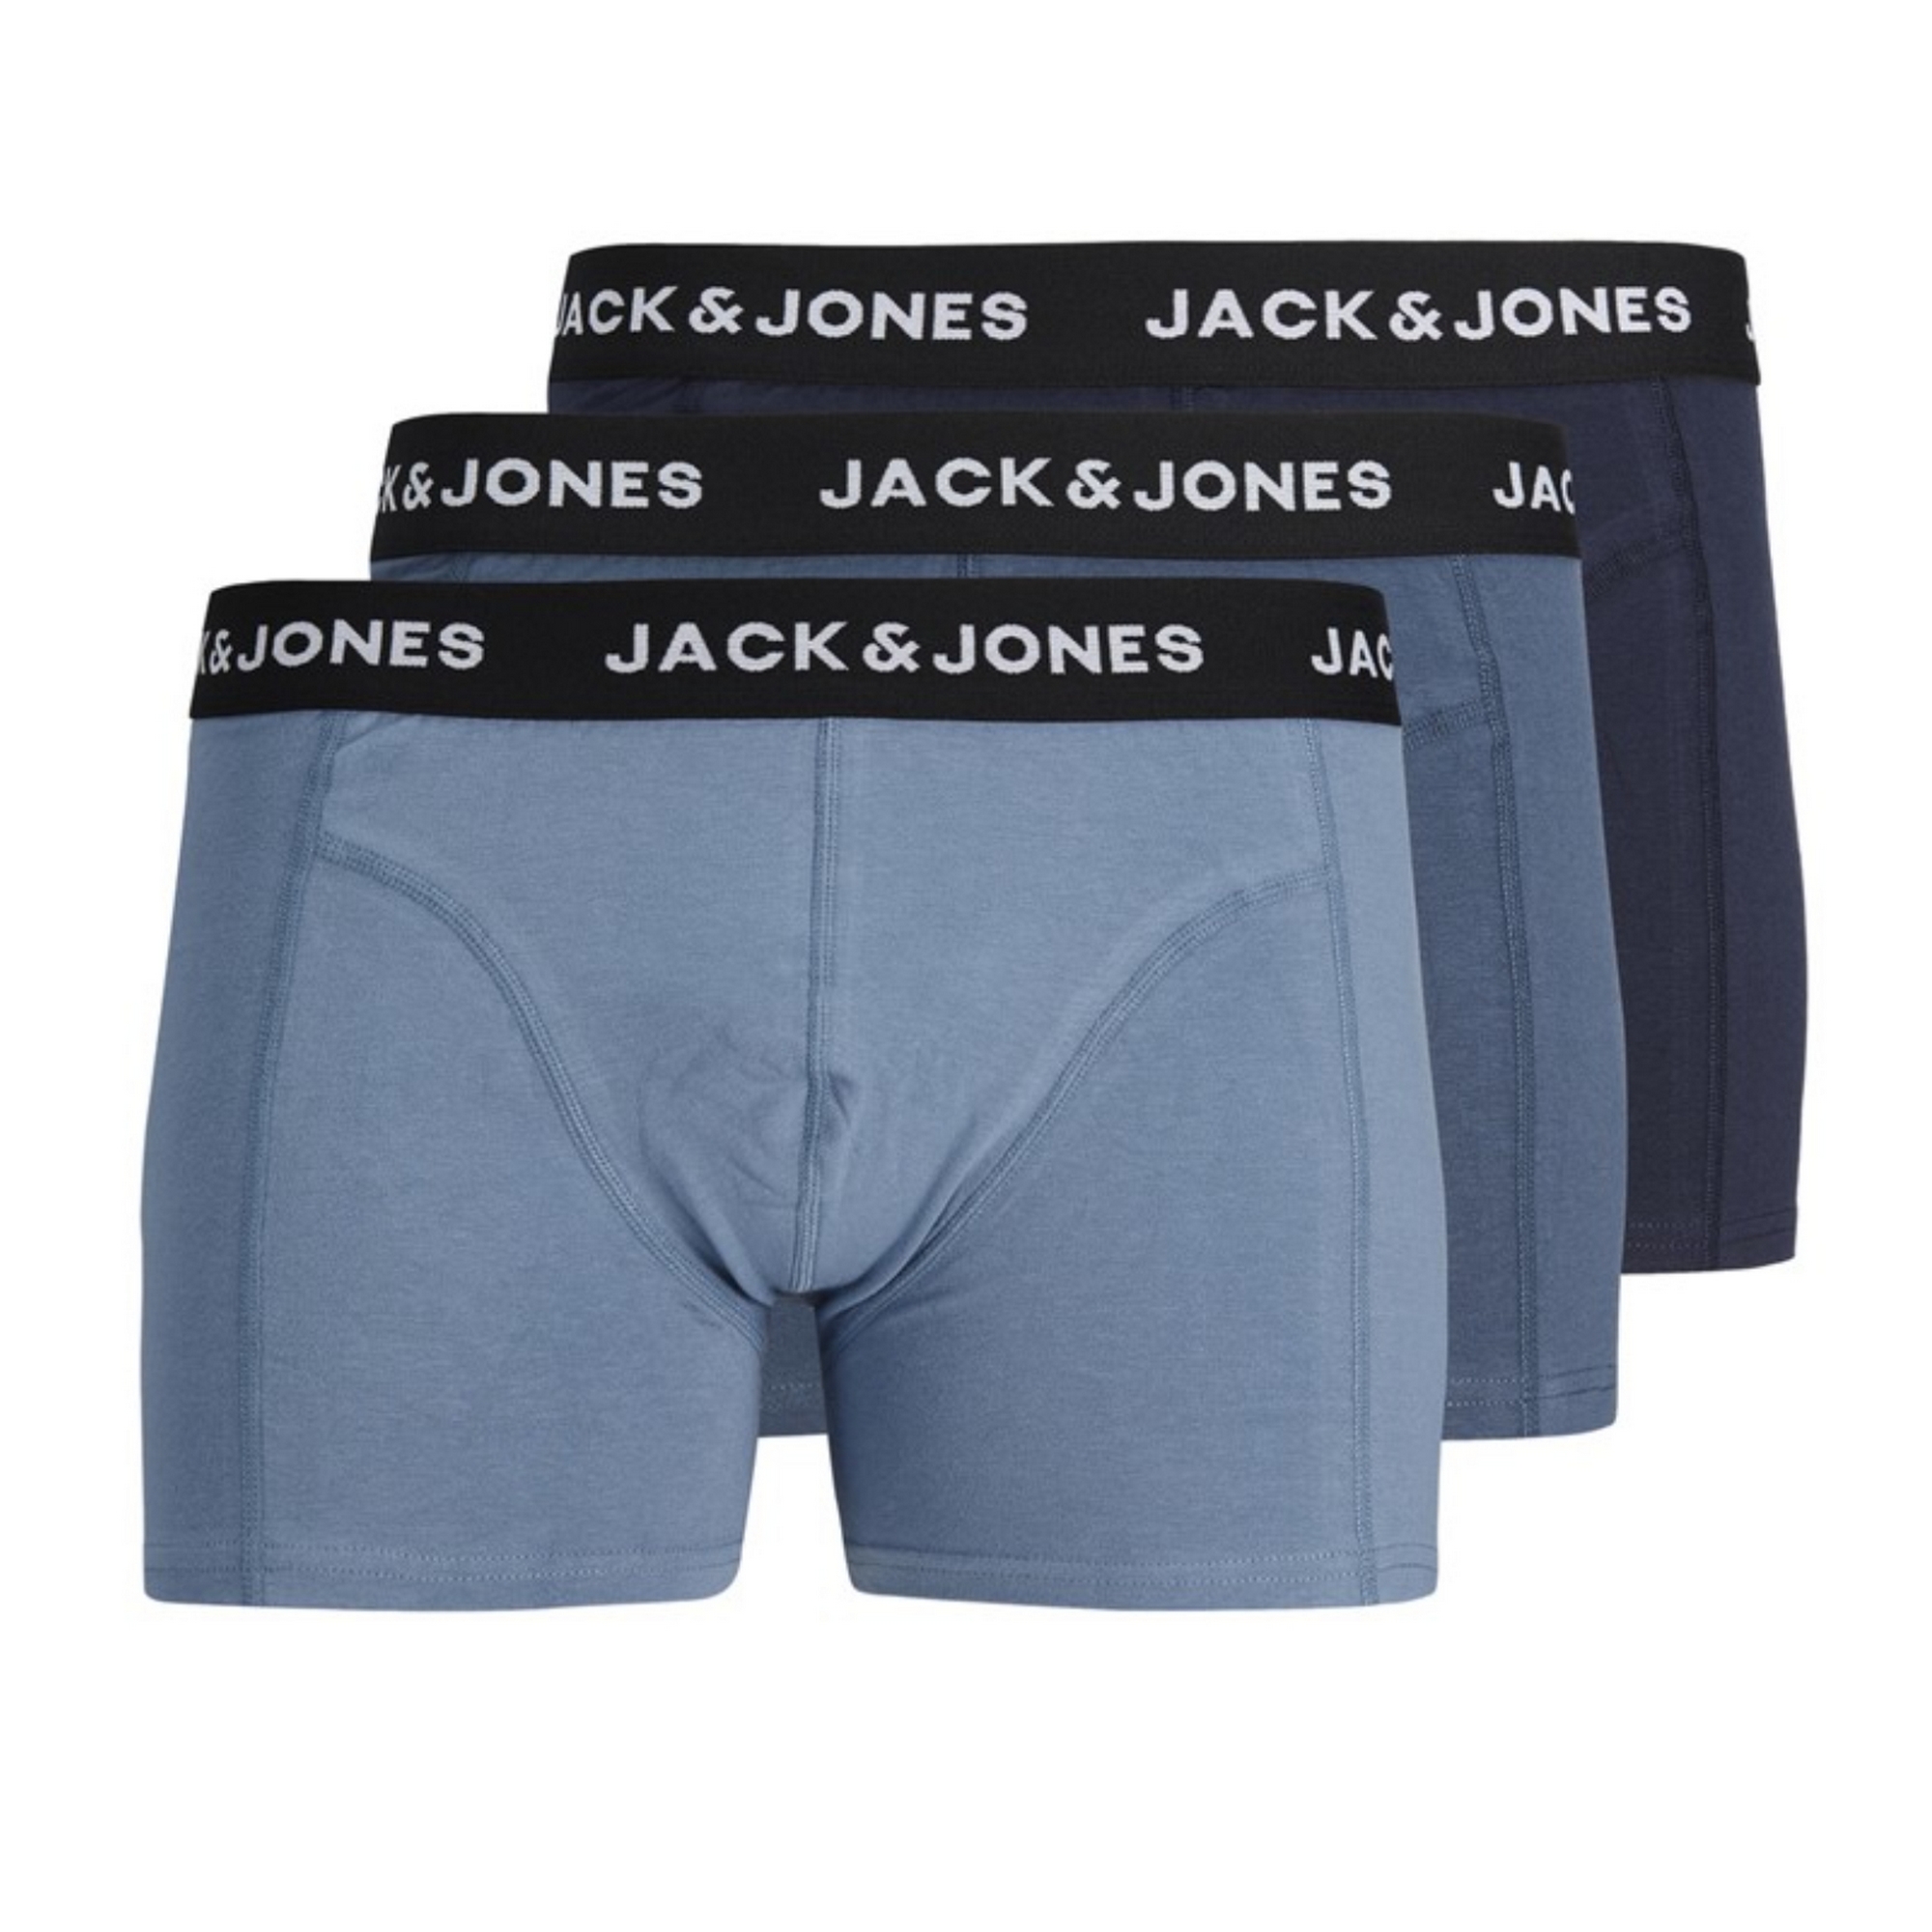 Pack de 3 calzoncillos Jack&Jones por sólo 16,19€ ¡¡46% de descuento!!